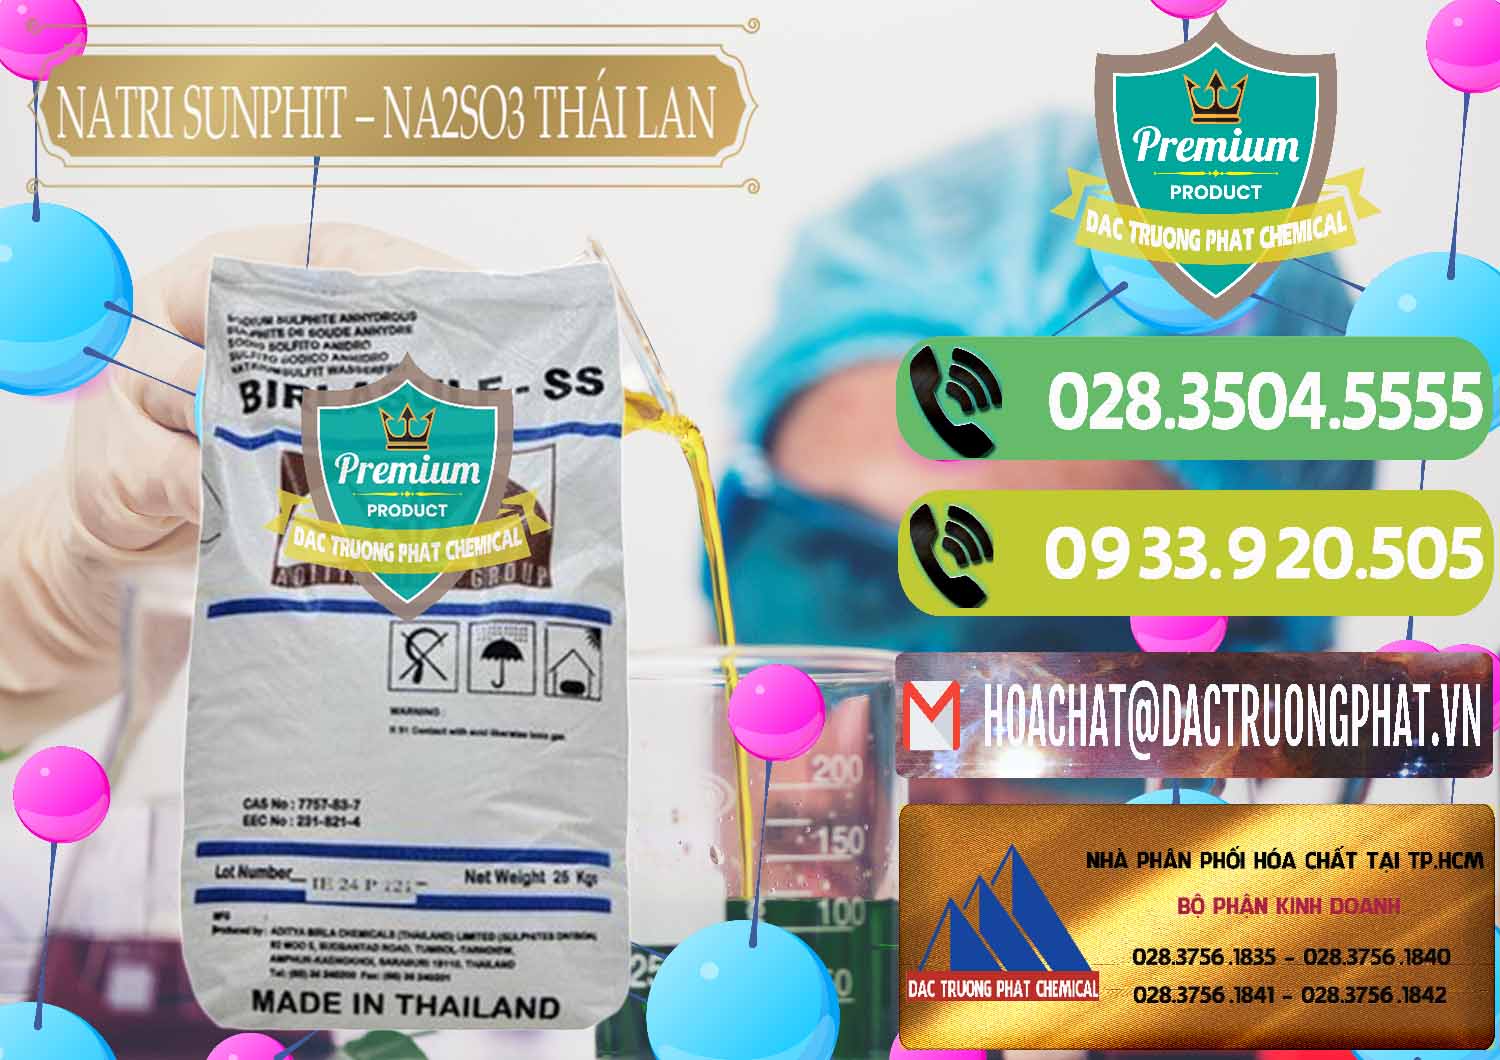 Cty chuyên phân phối _ bán Natri Sunphit - NA2SO3 Thái Lan - 0105 - Chuyên phân phối _ bán hóa chất tại TP.HCM - hoachatmientay.vn